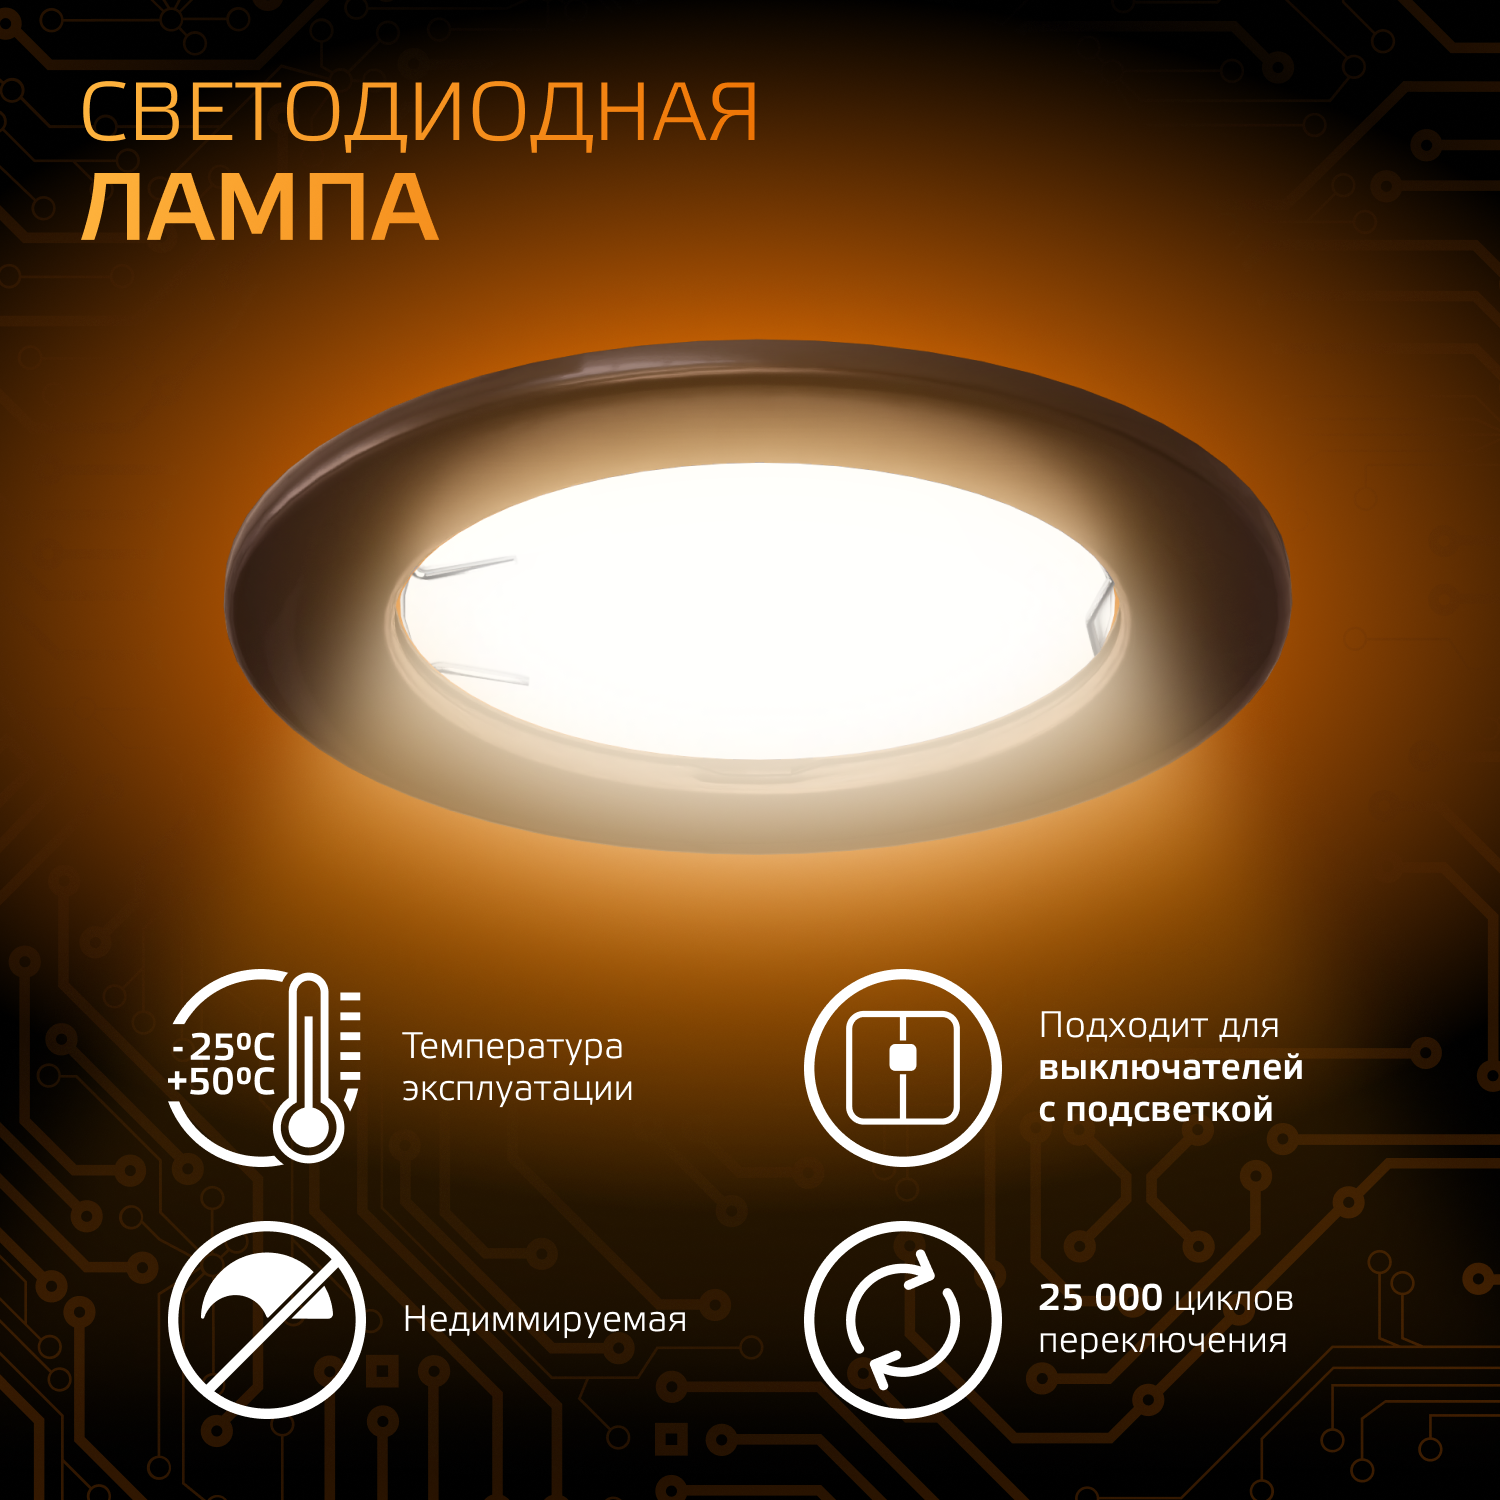 Лампочка светодиодная MR16 GU10 5W теплый свет 3000K упаковка 10 шт. Gauss